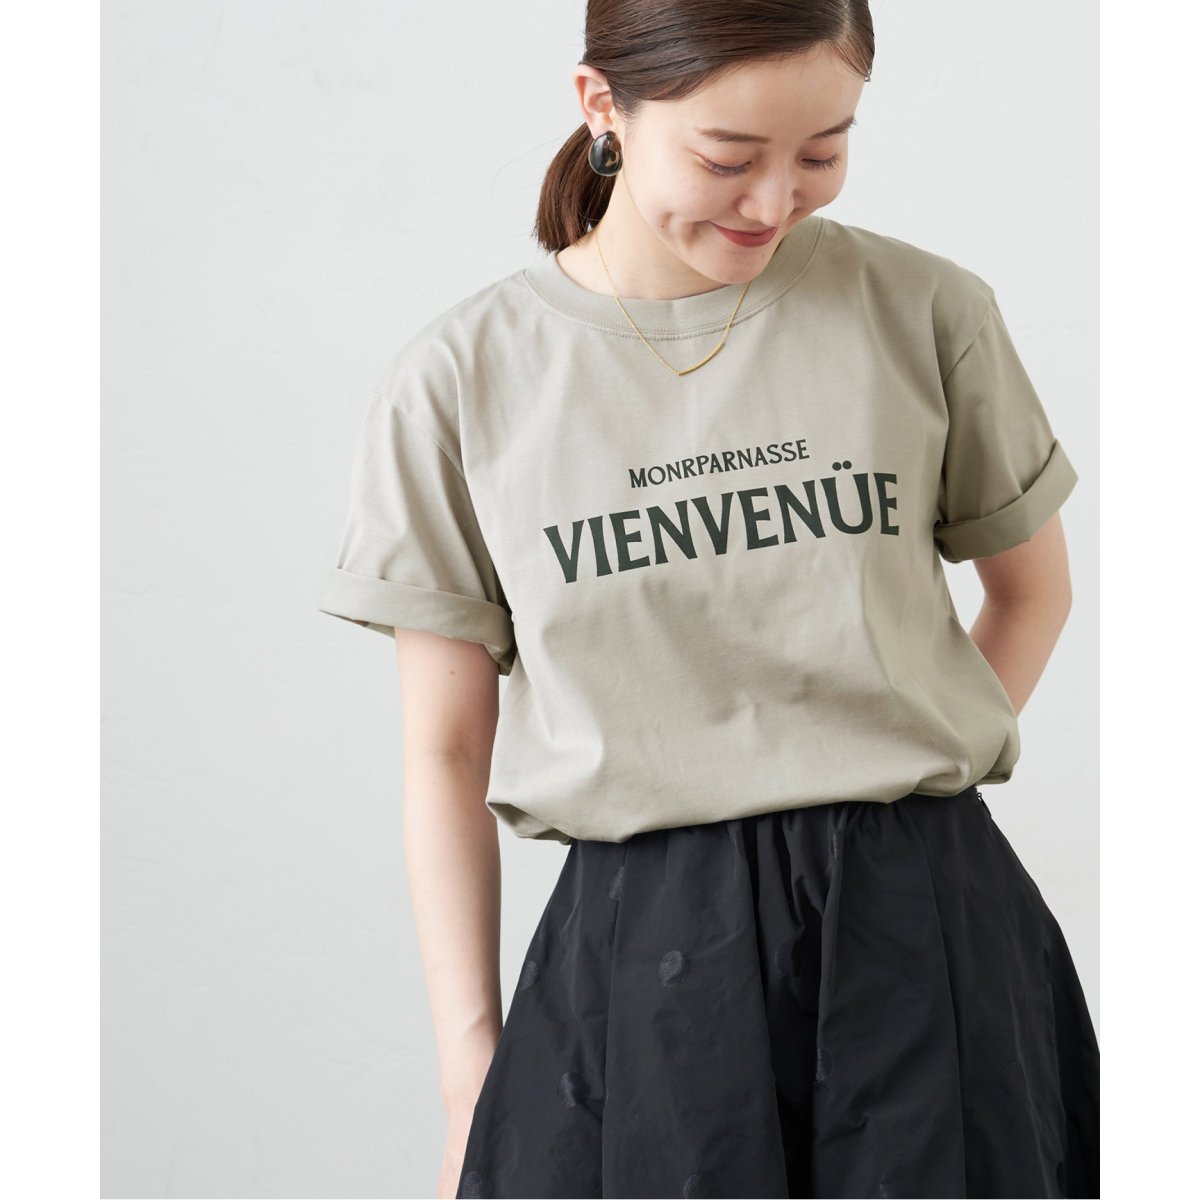 VIENVENUE Tシャツ | イエナ(IENA) | 23070900404030 | ファッション ...